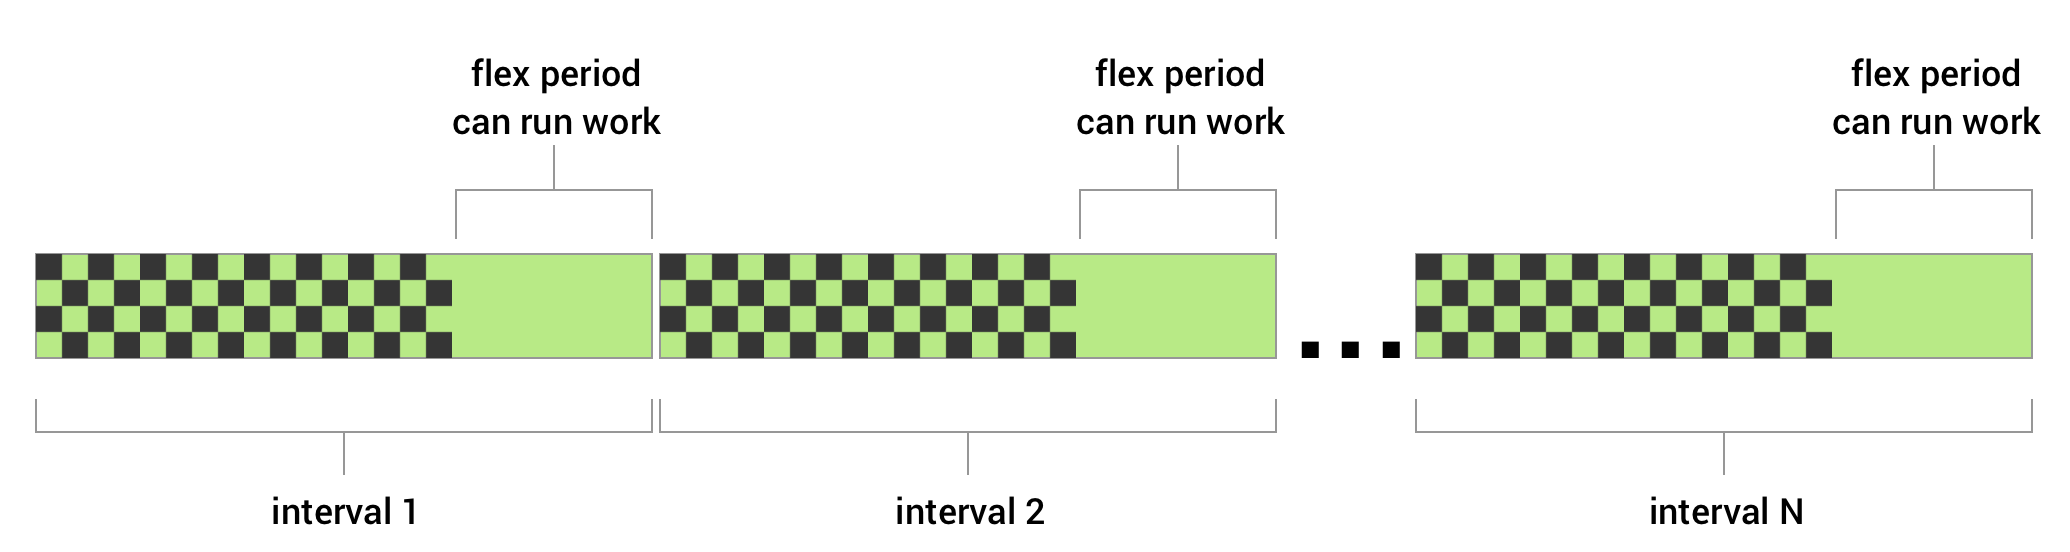 Puedes establecer un intervalo flexible para un trabajo periódico. Debes definir un intervalo de repetición y un intervalo flexible que especifique una cantidad de tiempo determinada al final del intervalo que se repite. WorkManager intentará ejecutar tu trabajo en el transcurso del intervalo flexible de cada ciclo.